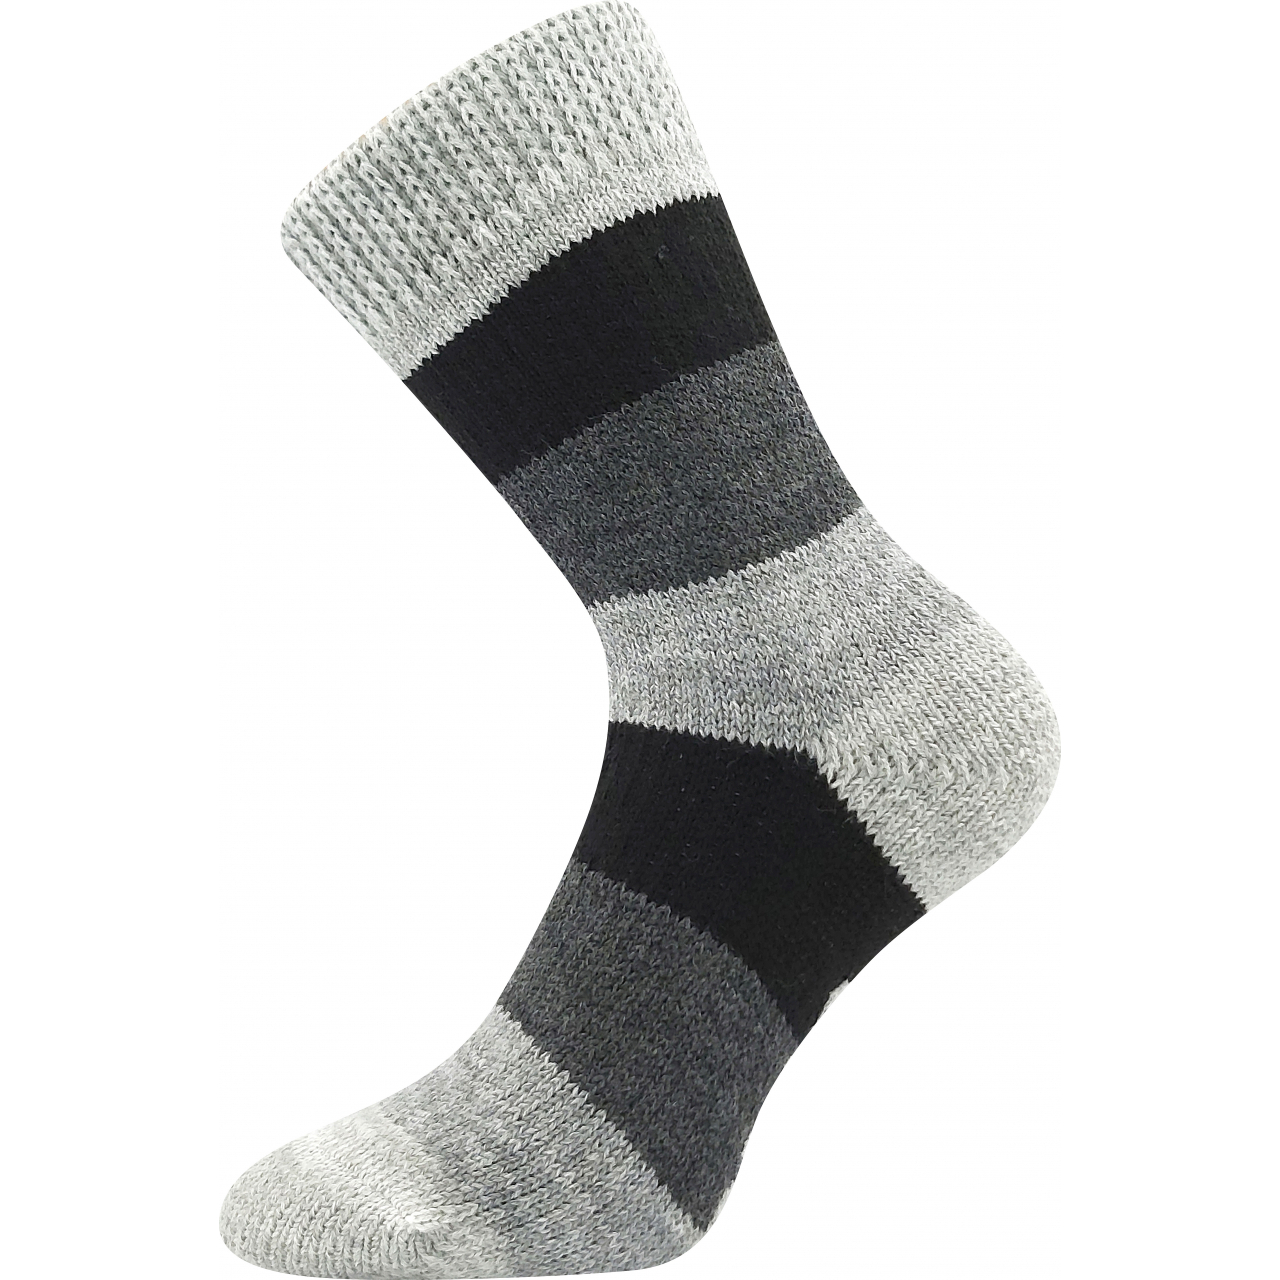 Ponožky spací unisex Boma Spací Pruh - šedé-černé, 43-46